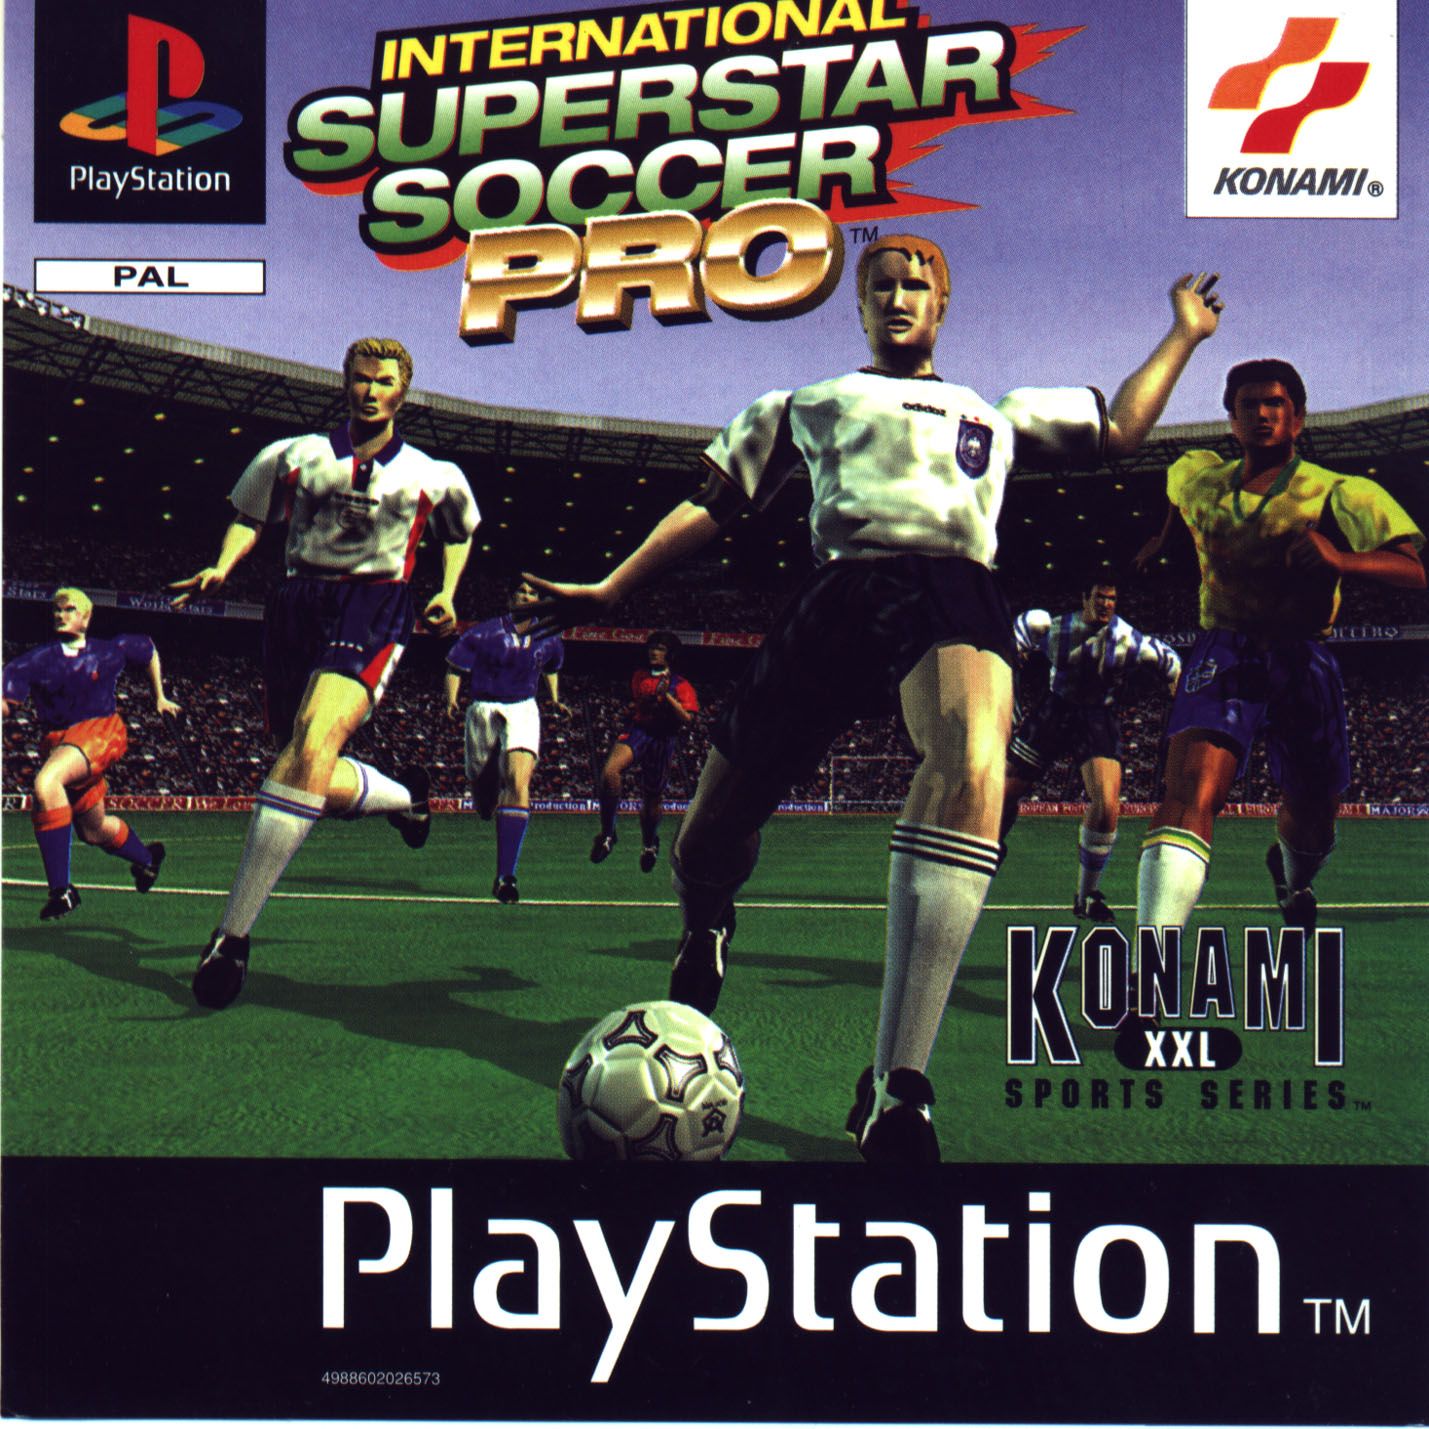 International Superstar Soccer (PlayStation 2) - The Cutting Room Floor